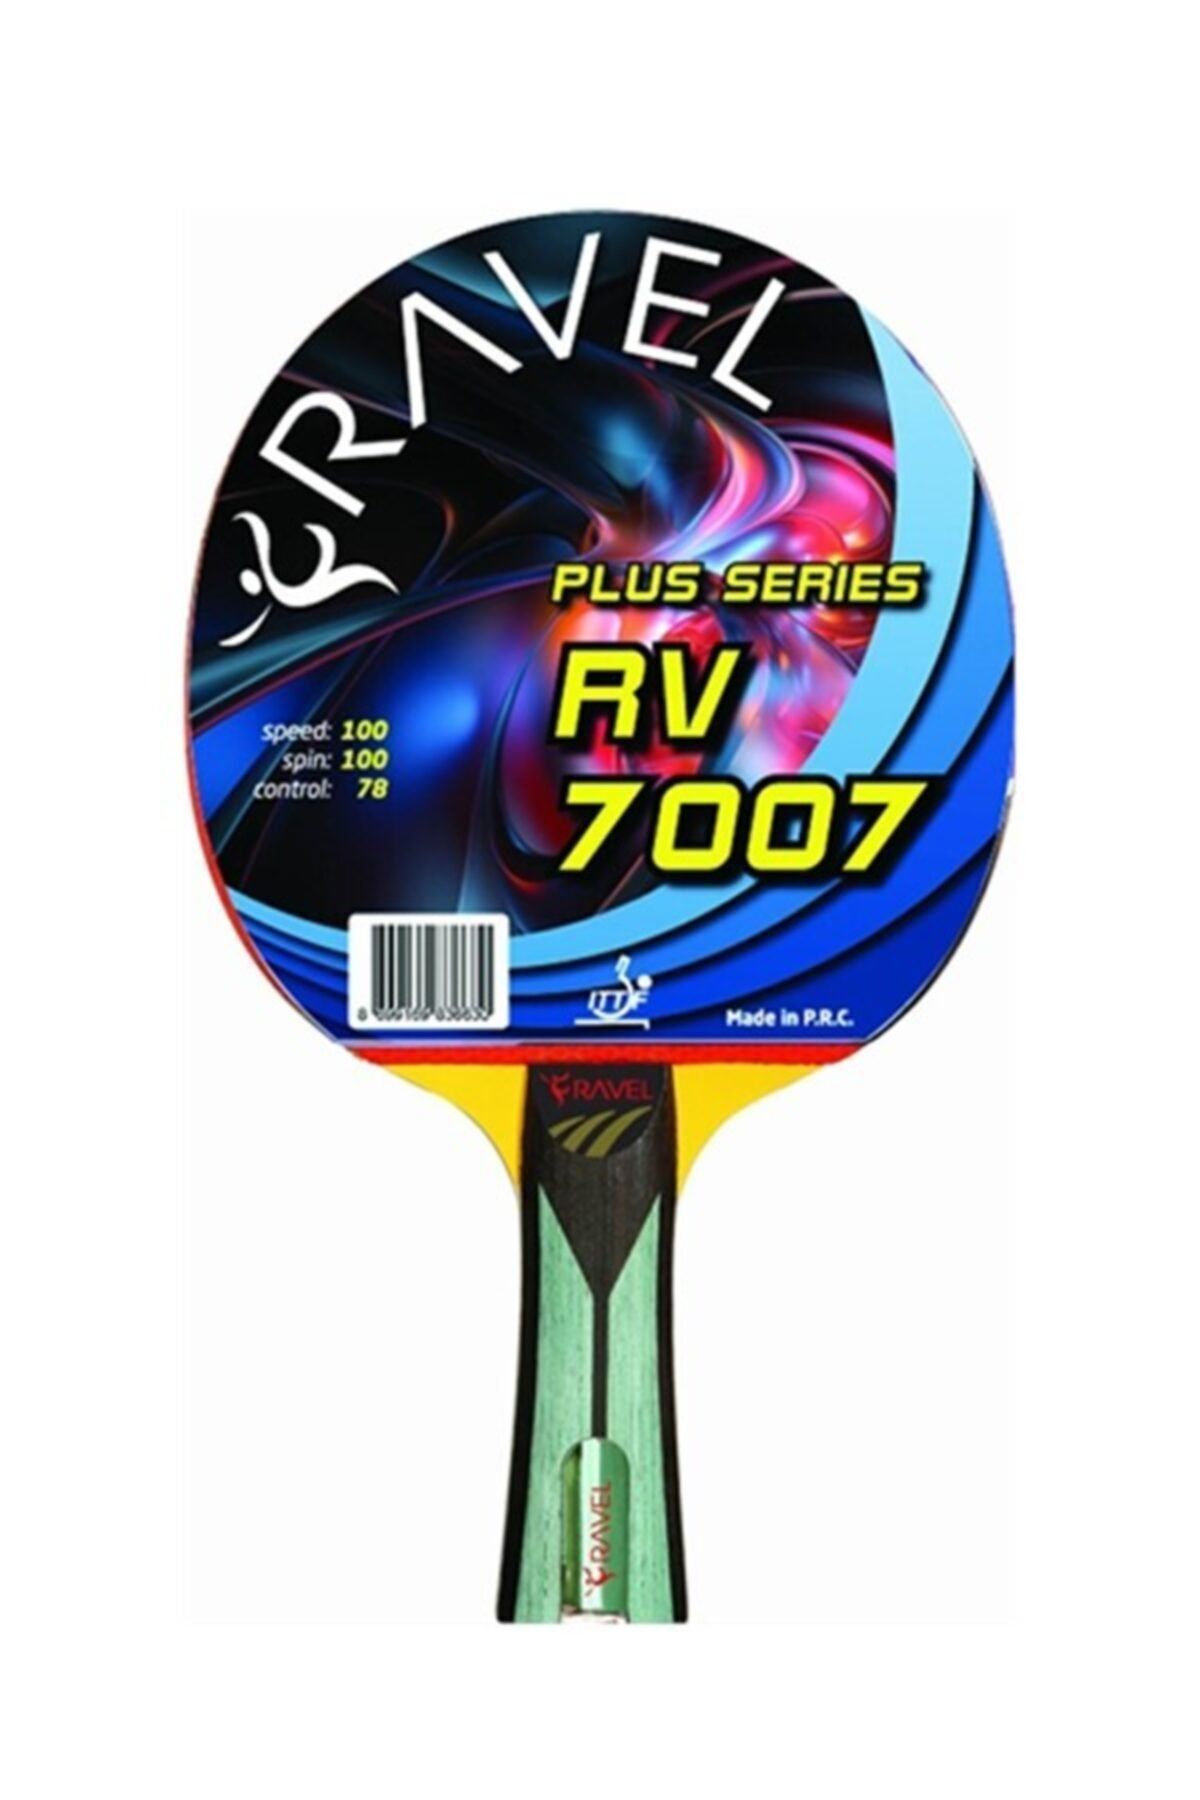 Ravel Rv 7007 Masa Tenisi Raketi